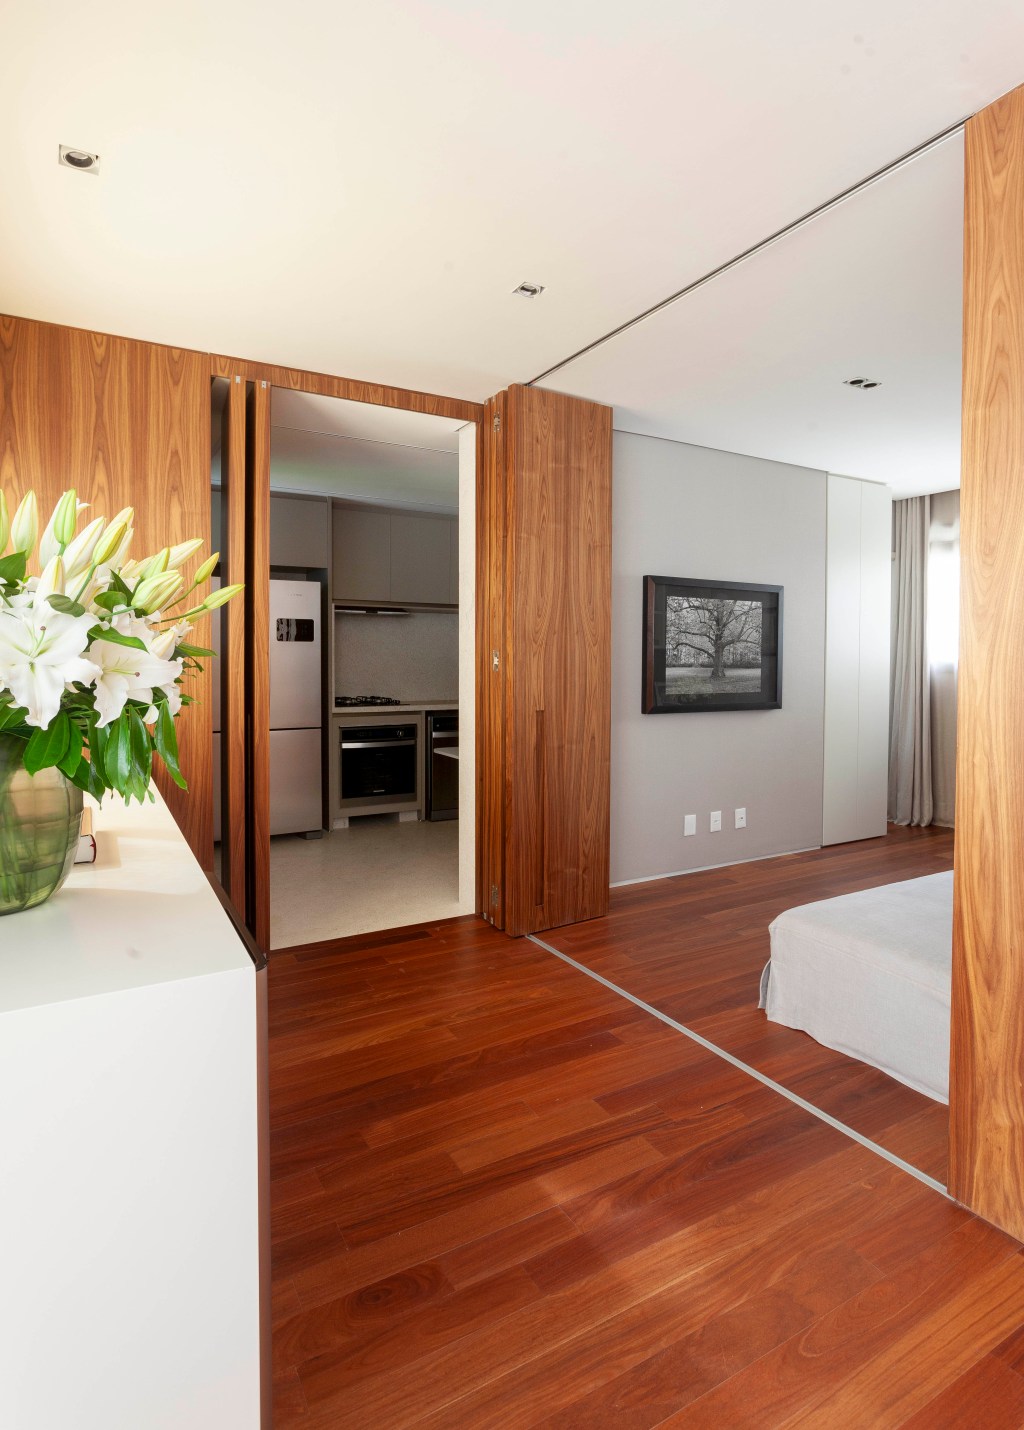 David Bastos assina apartamento clássico de 174 m² em São Paulo. Na foto, cozinha escondida atrás de portas camufladas.